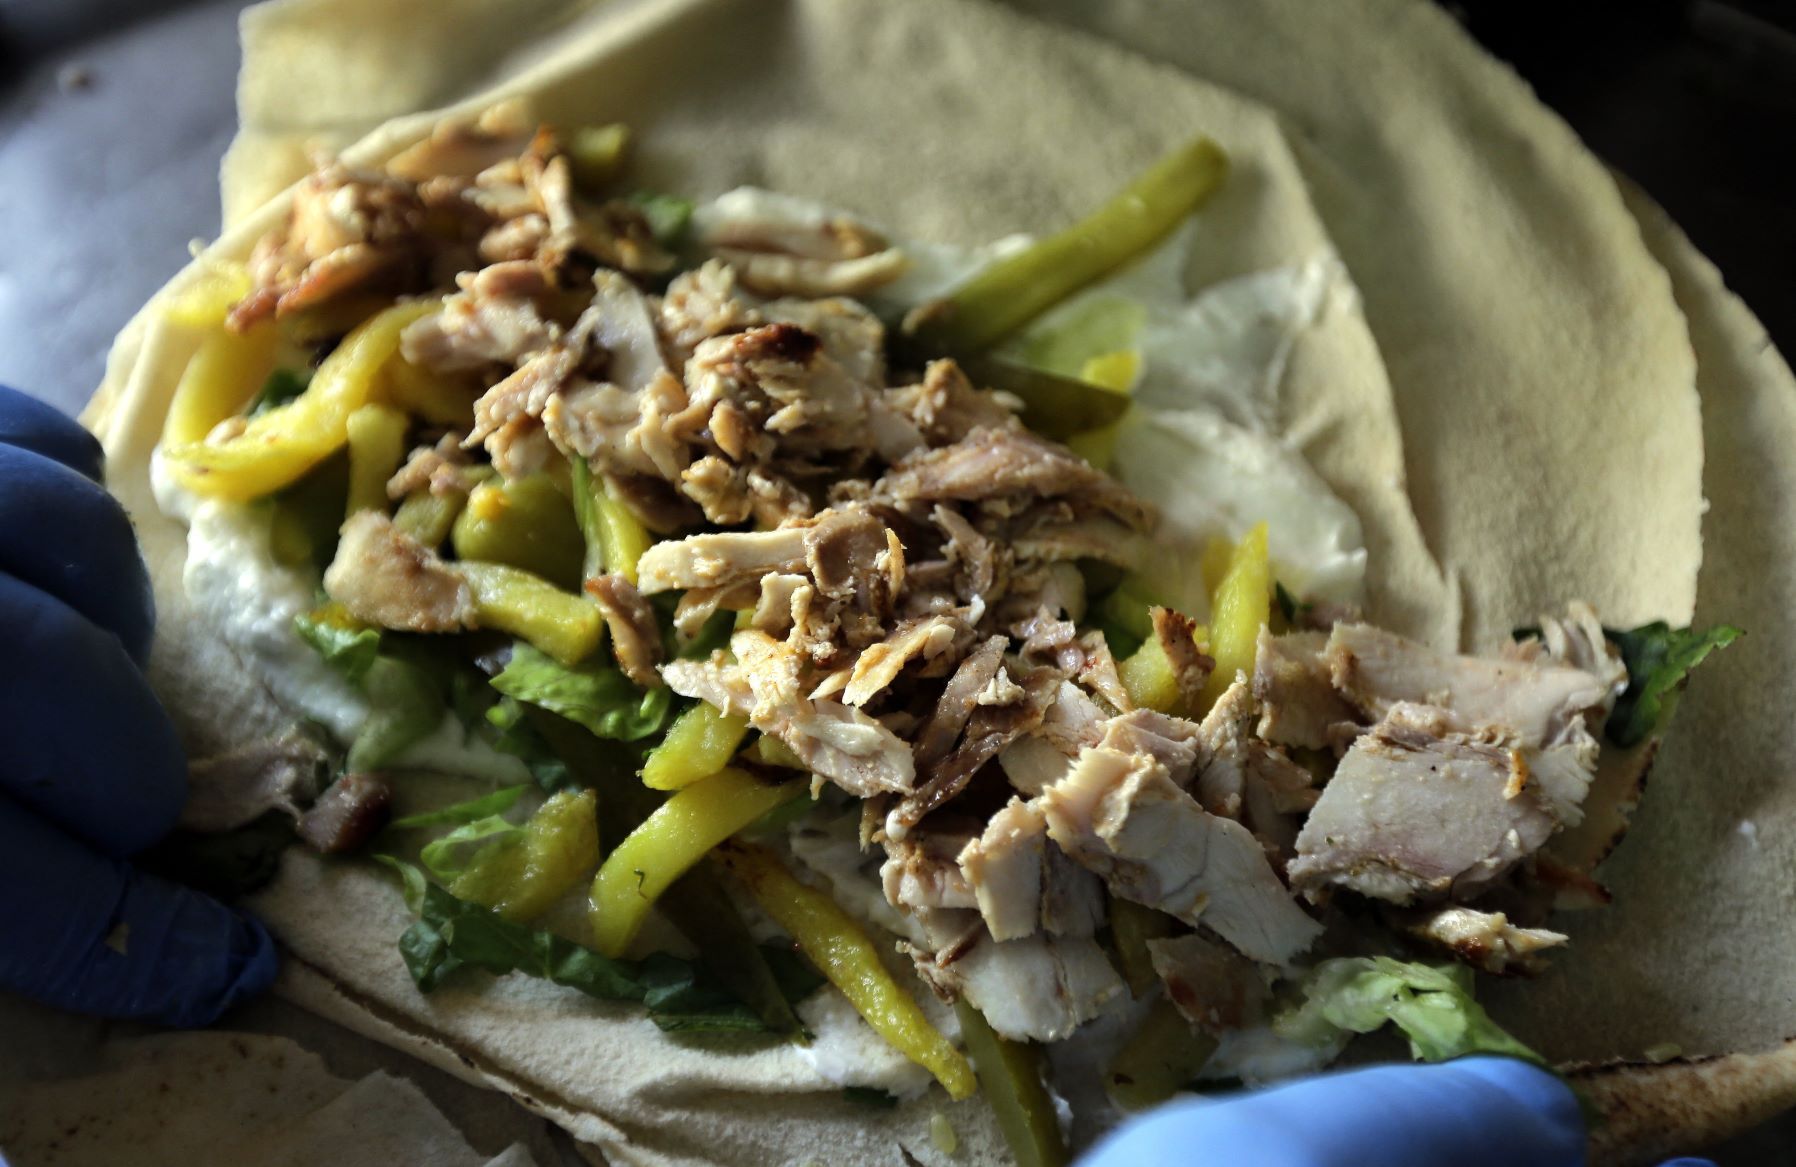 Les sandwiches au chawarma sont l’un des plats les plus populaires de la restauration rapide au Moyen-Orient (AFP/Joseph Eid)